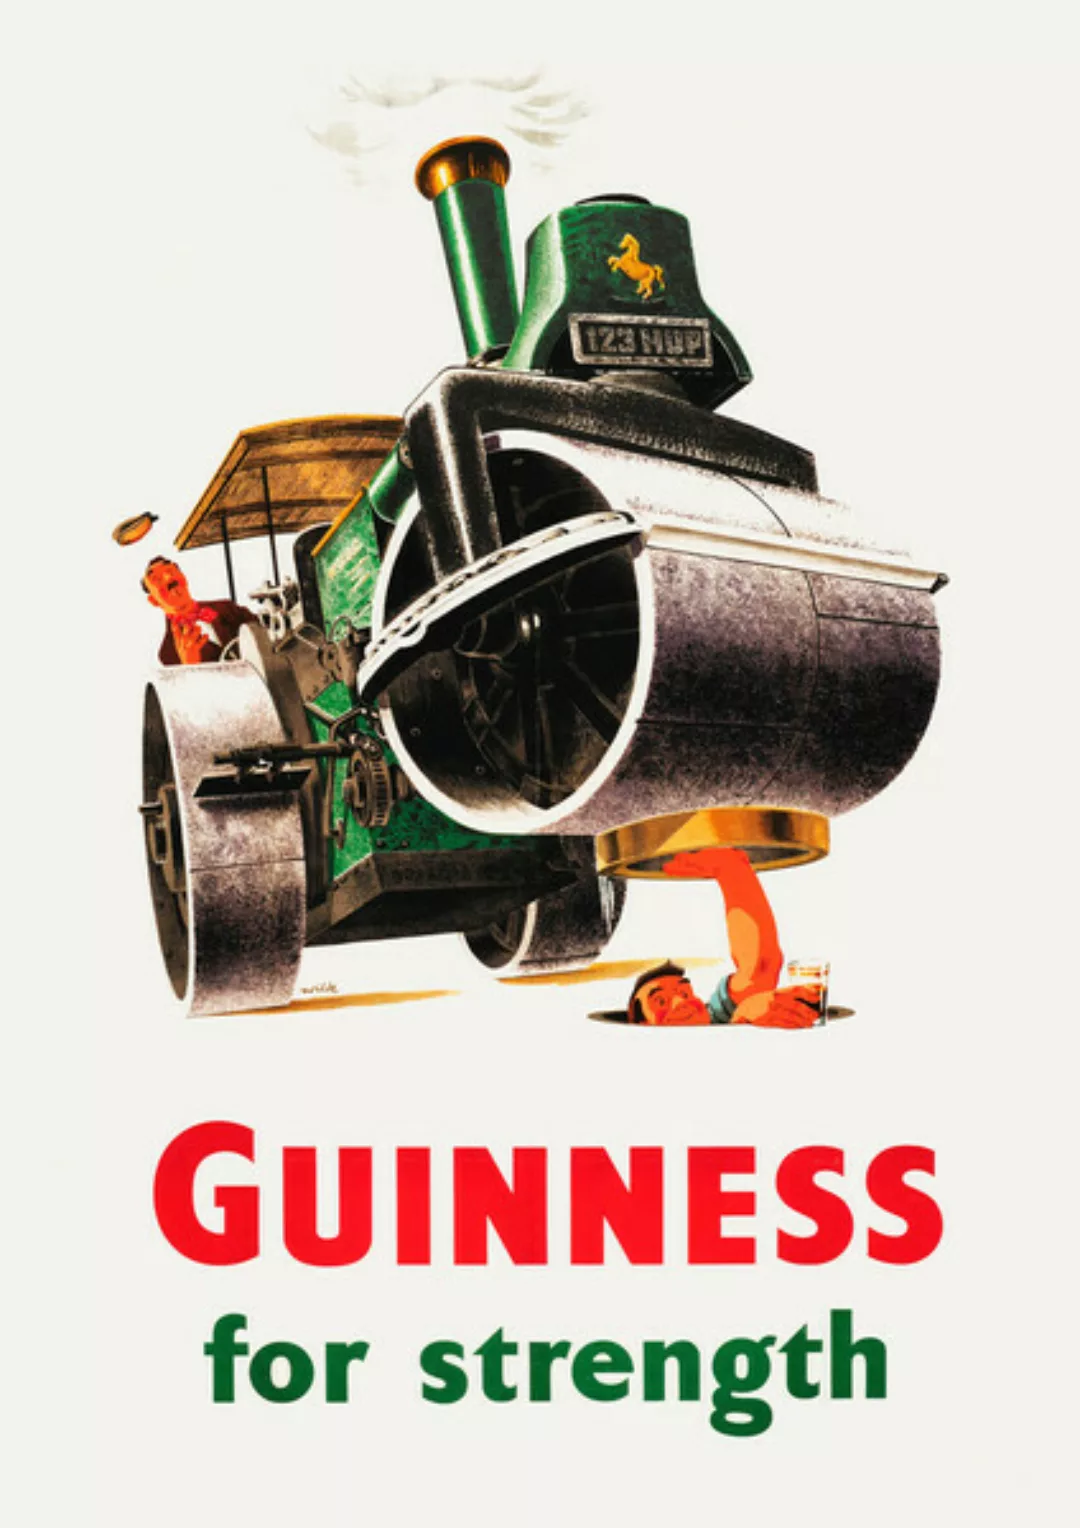 Poster / Leinwandbild - Guinness For Strength günstig online kaufen